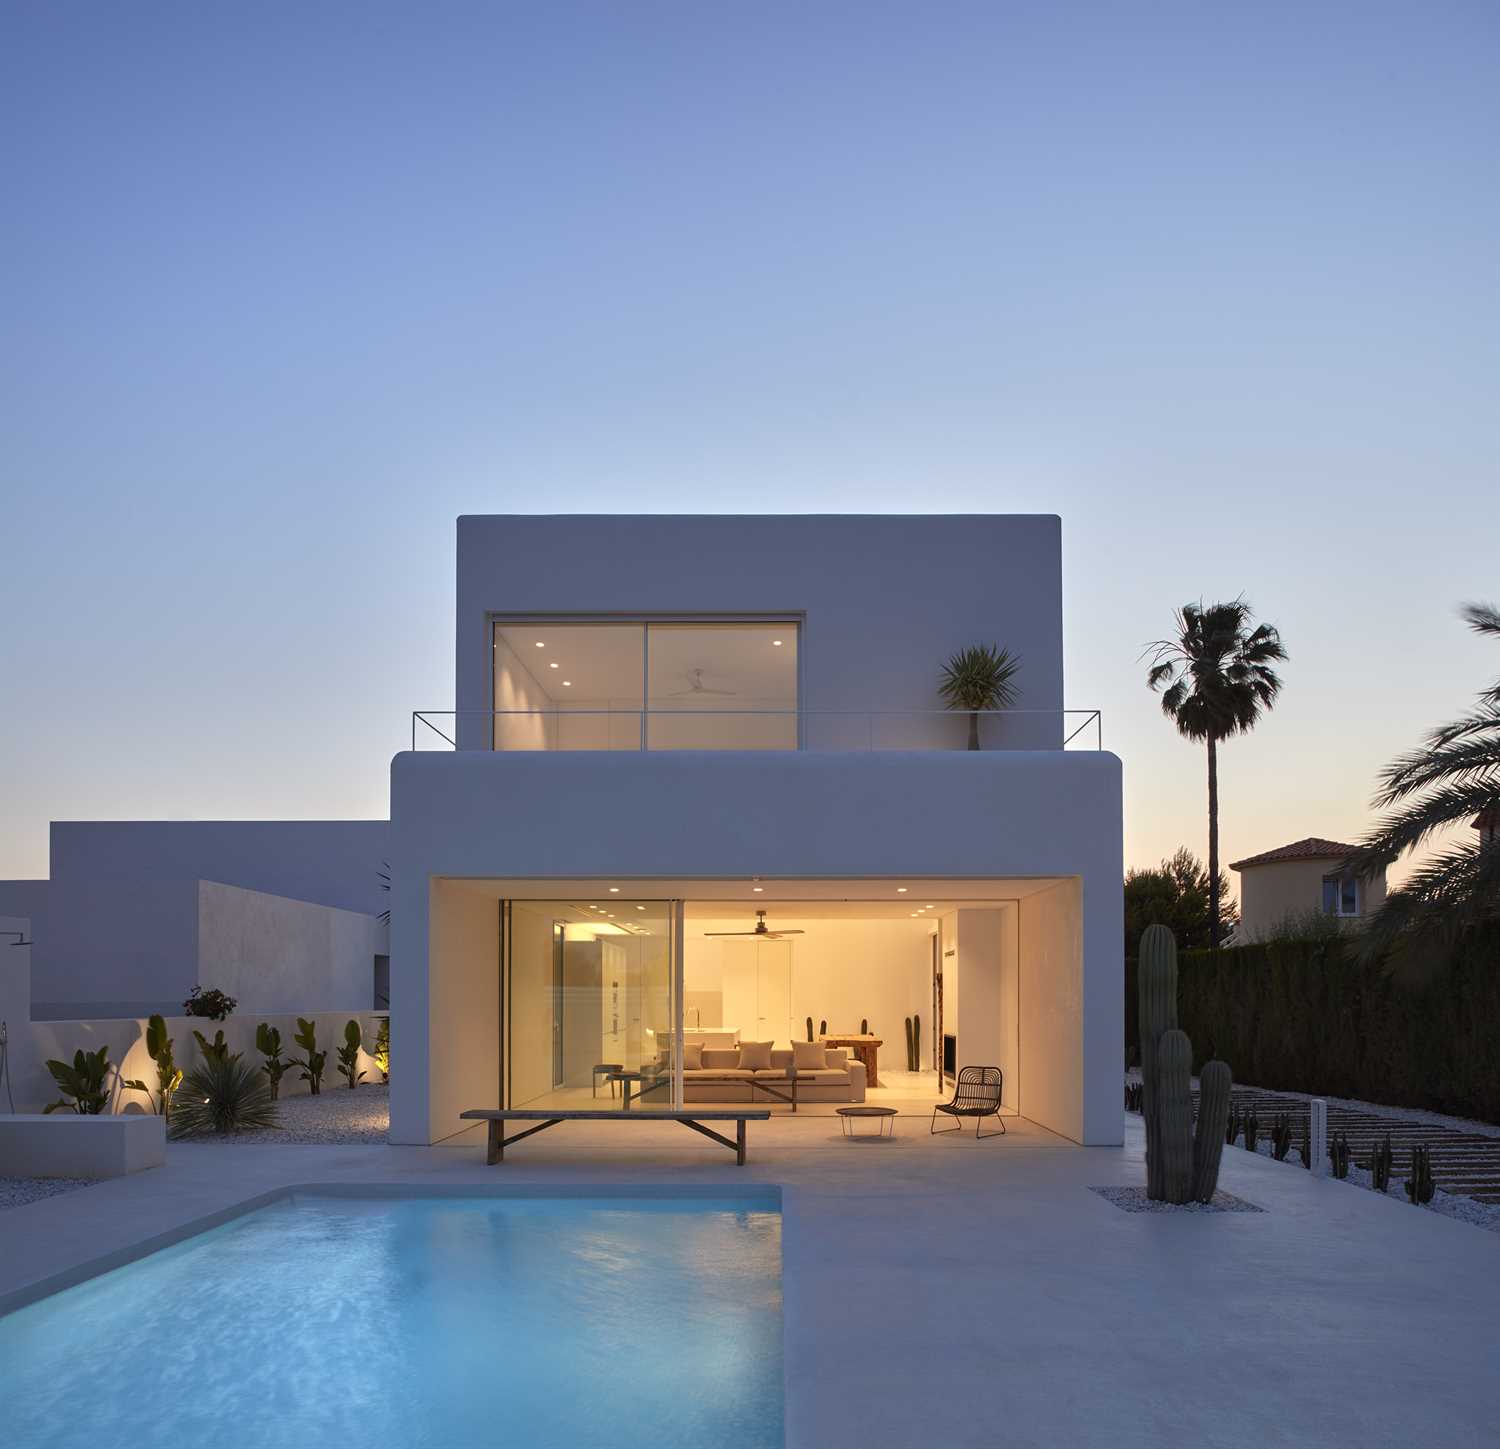 Microcimento branco em fachada e piscina de habitação moderna.